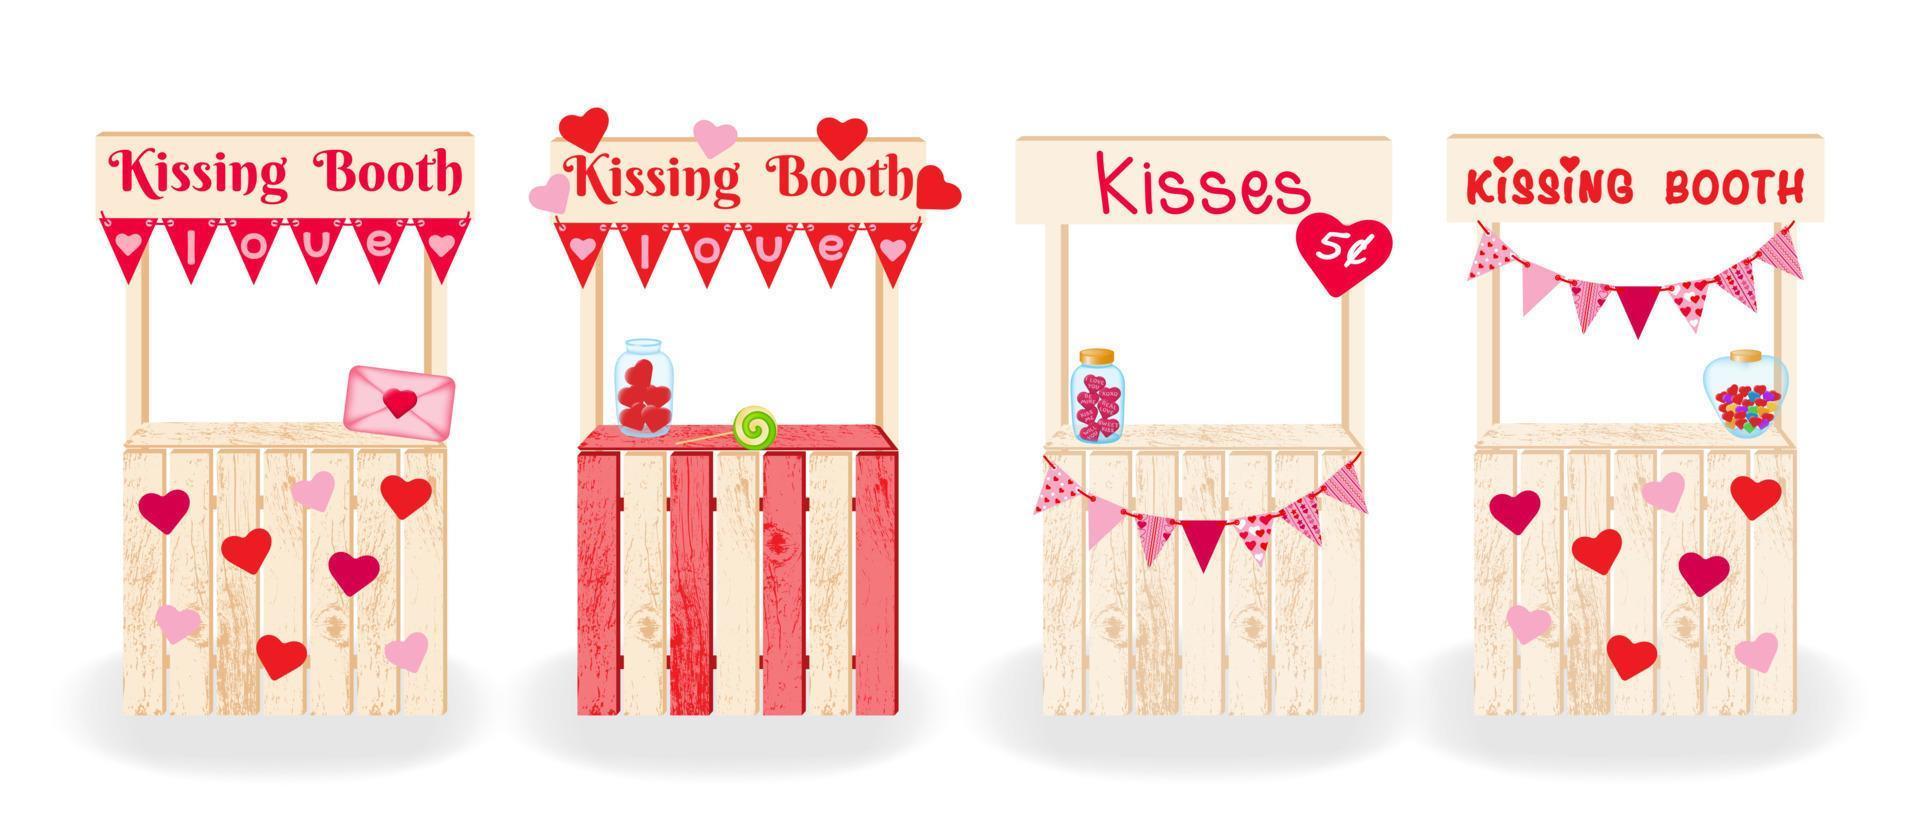 beijando os dois. quatro cabines de beijo decoradas decorativas. conjunto de decorações de madeira para comemorar aniversário, casamento, feliz dia dos namorados. ilustração vetorial. vetor